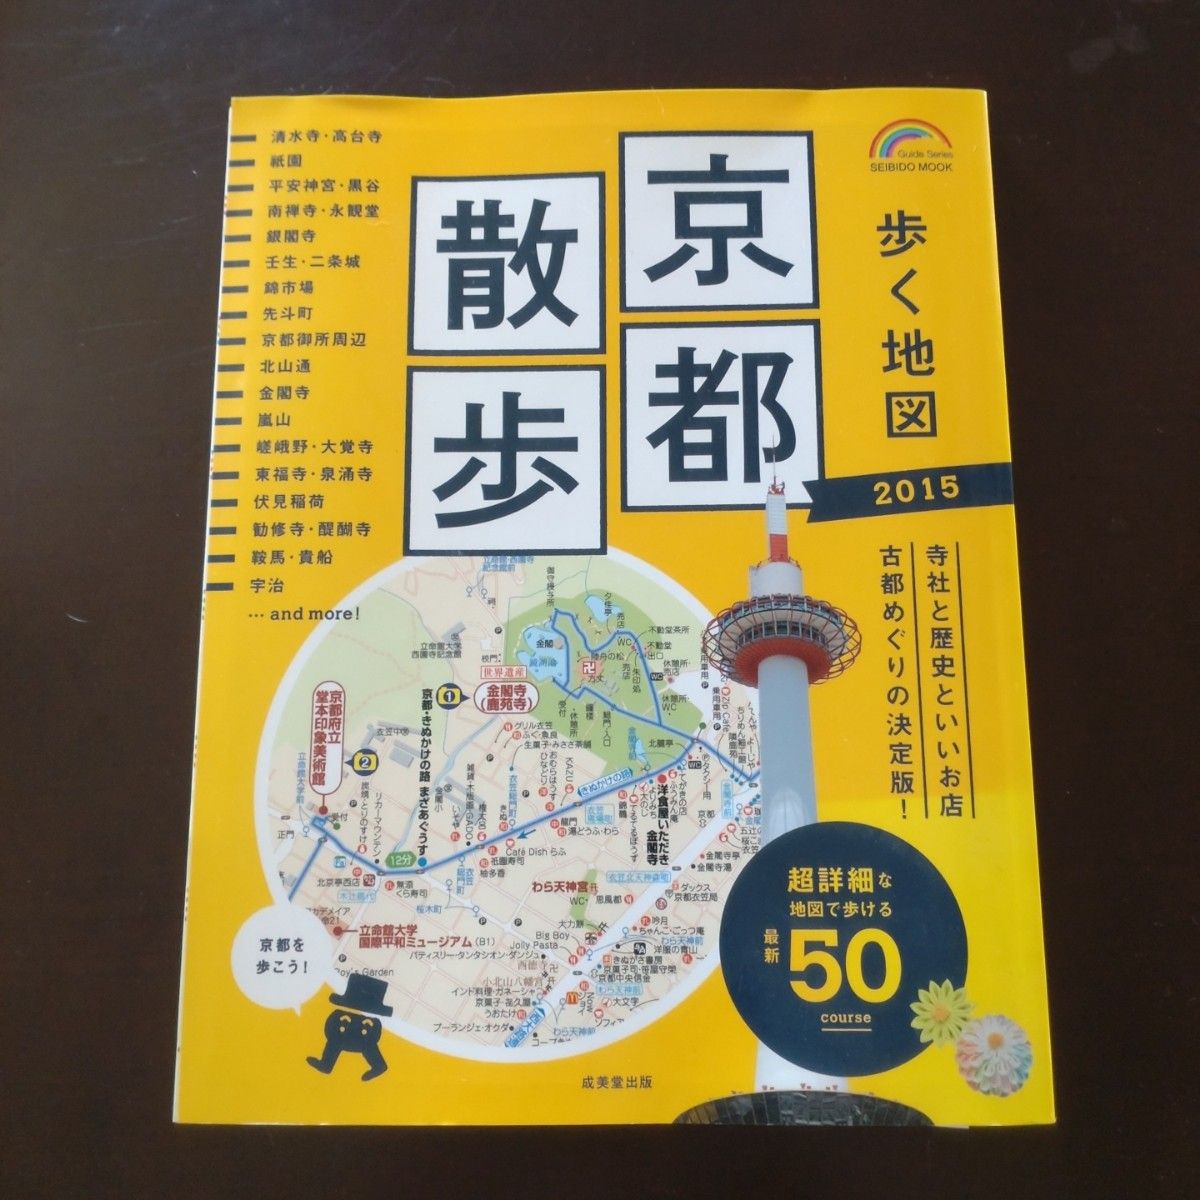 歩く地図京都散歩 2015 (詳細マップで歩く50コース)